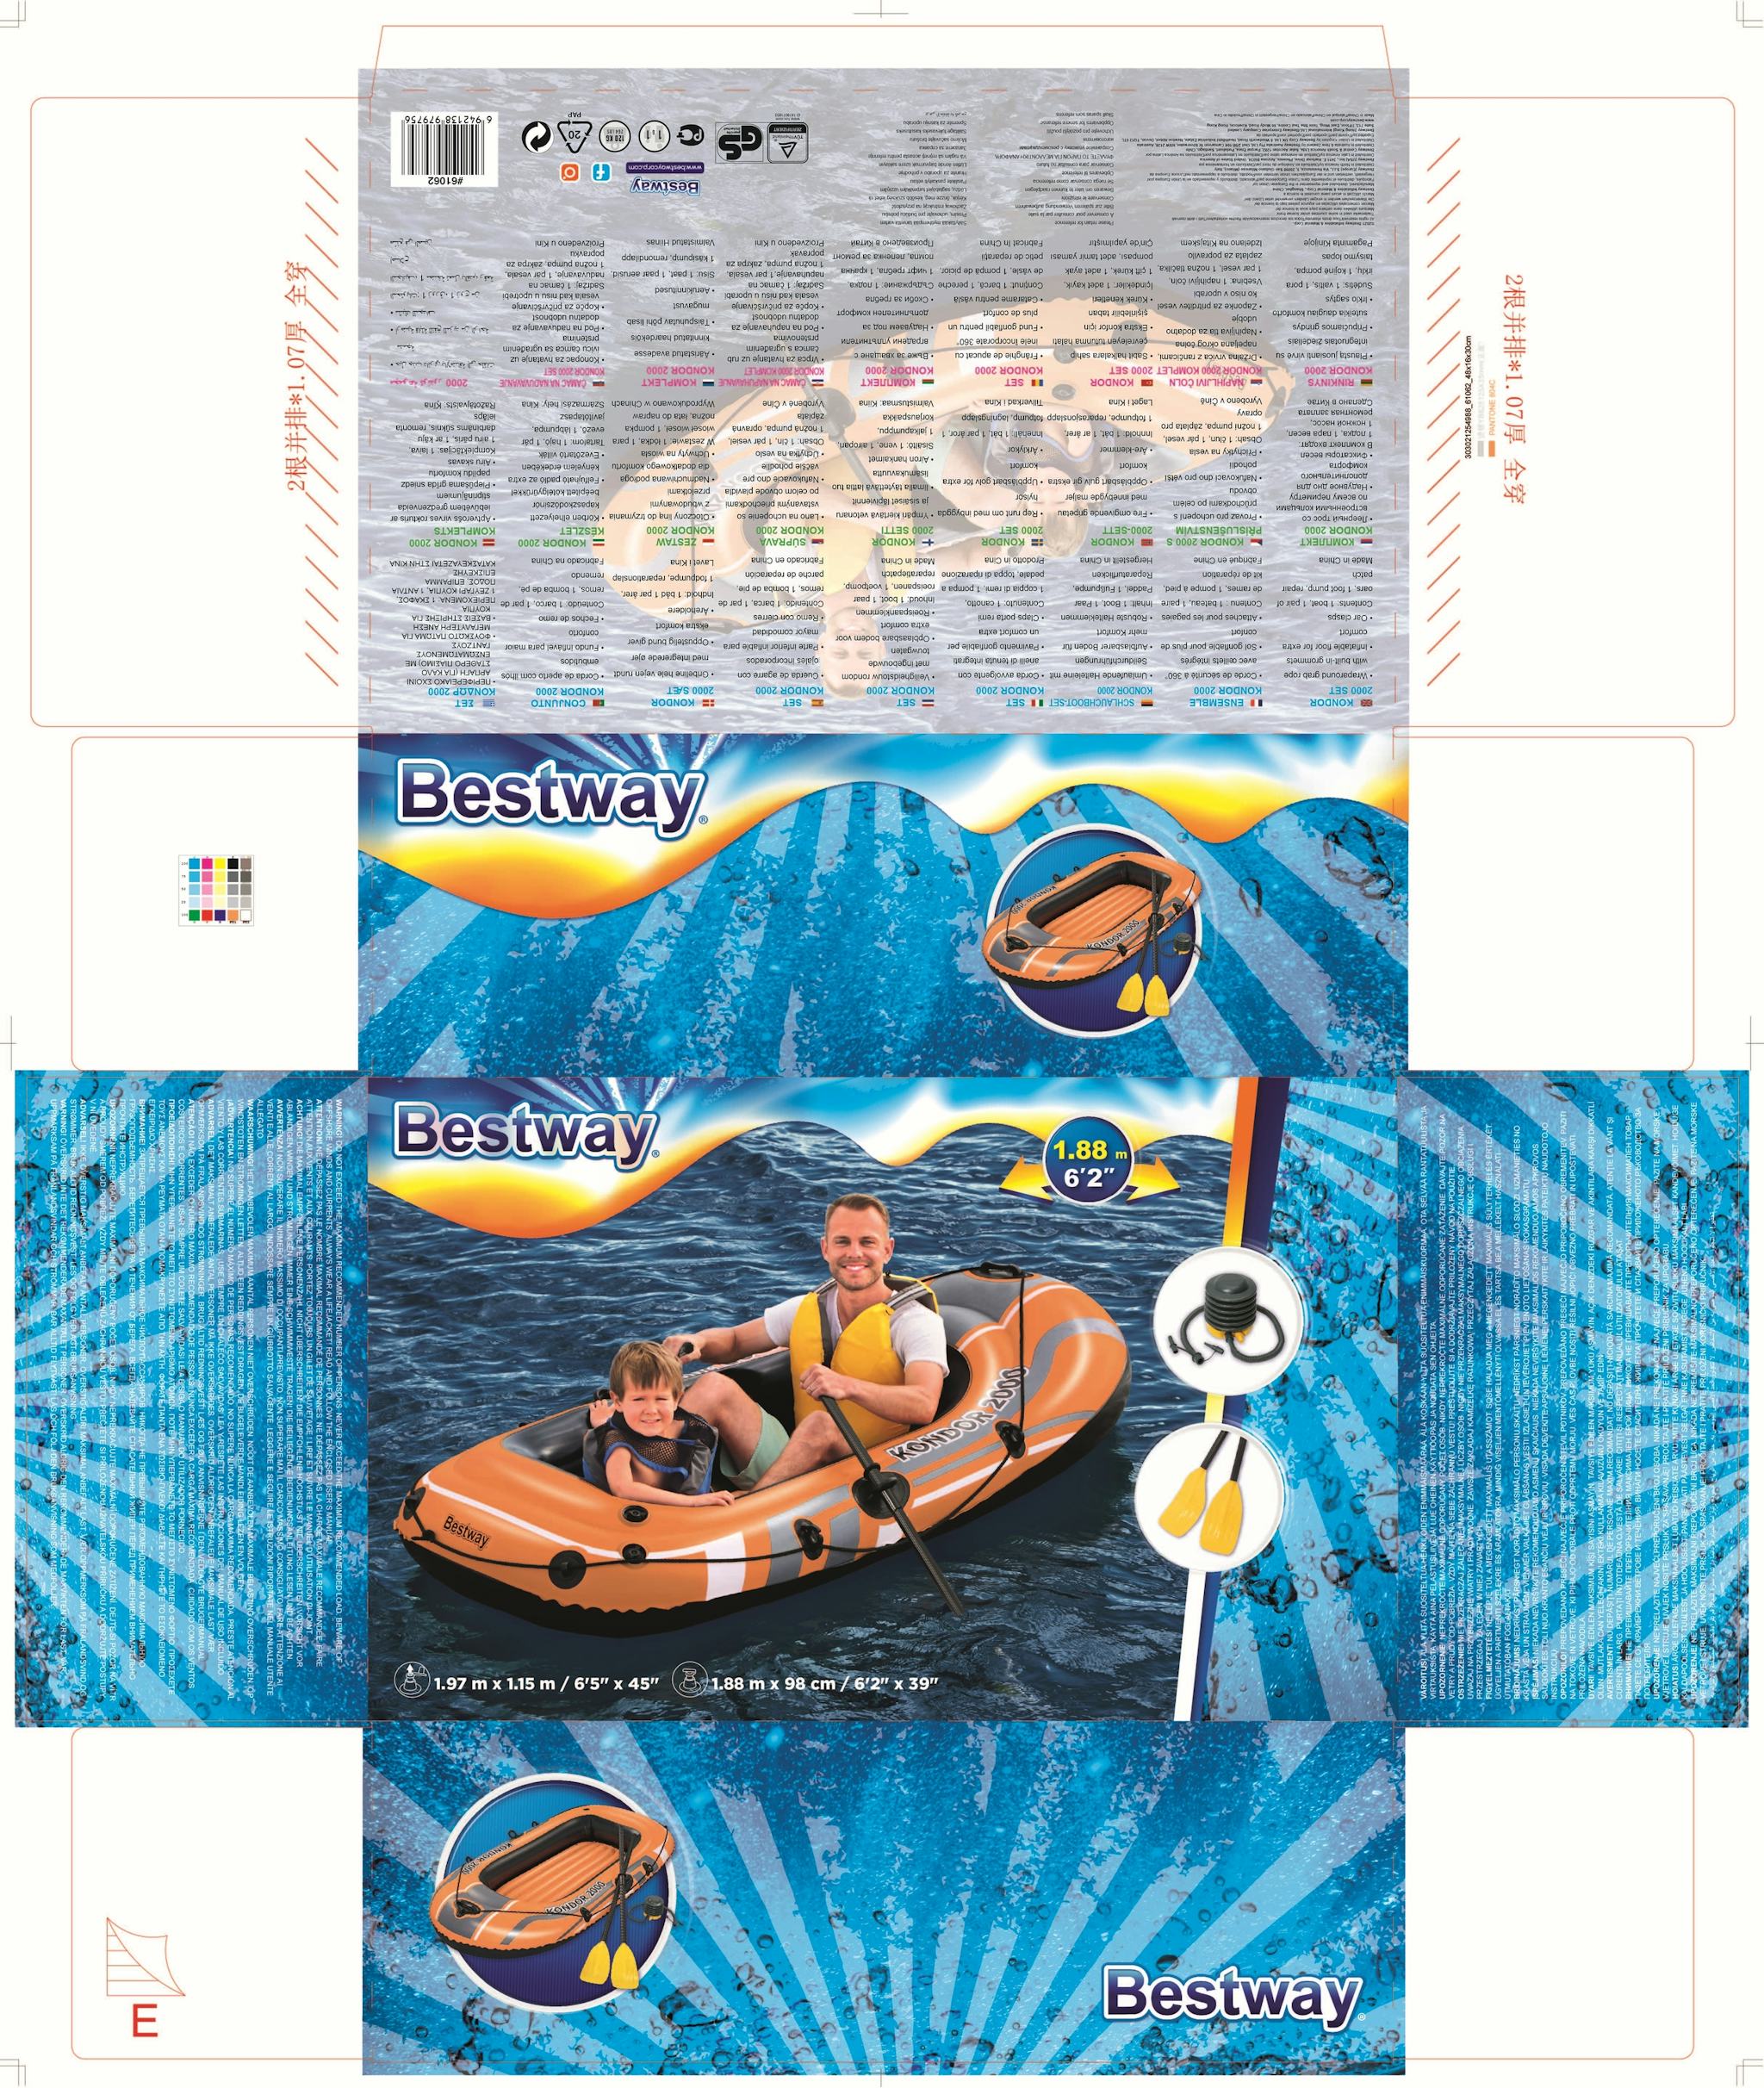 Sports d'eau Bateau gonflable Kondor 2000, 2 rames, gonfleur, 188 x 98 x 30 cm Bestway 19